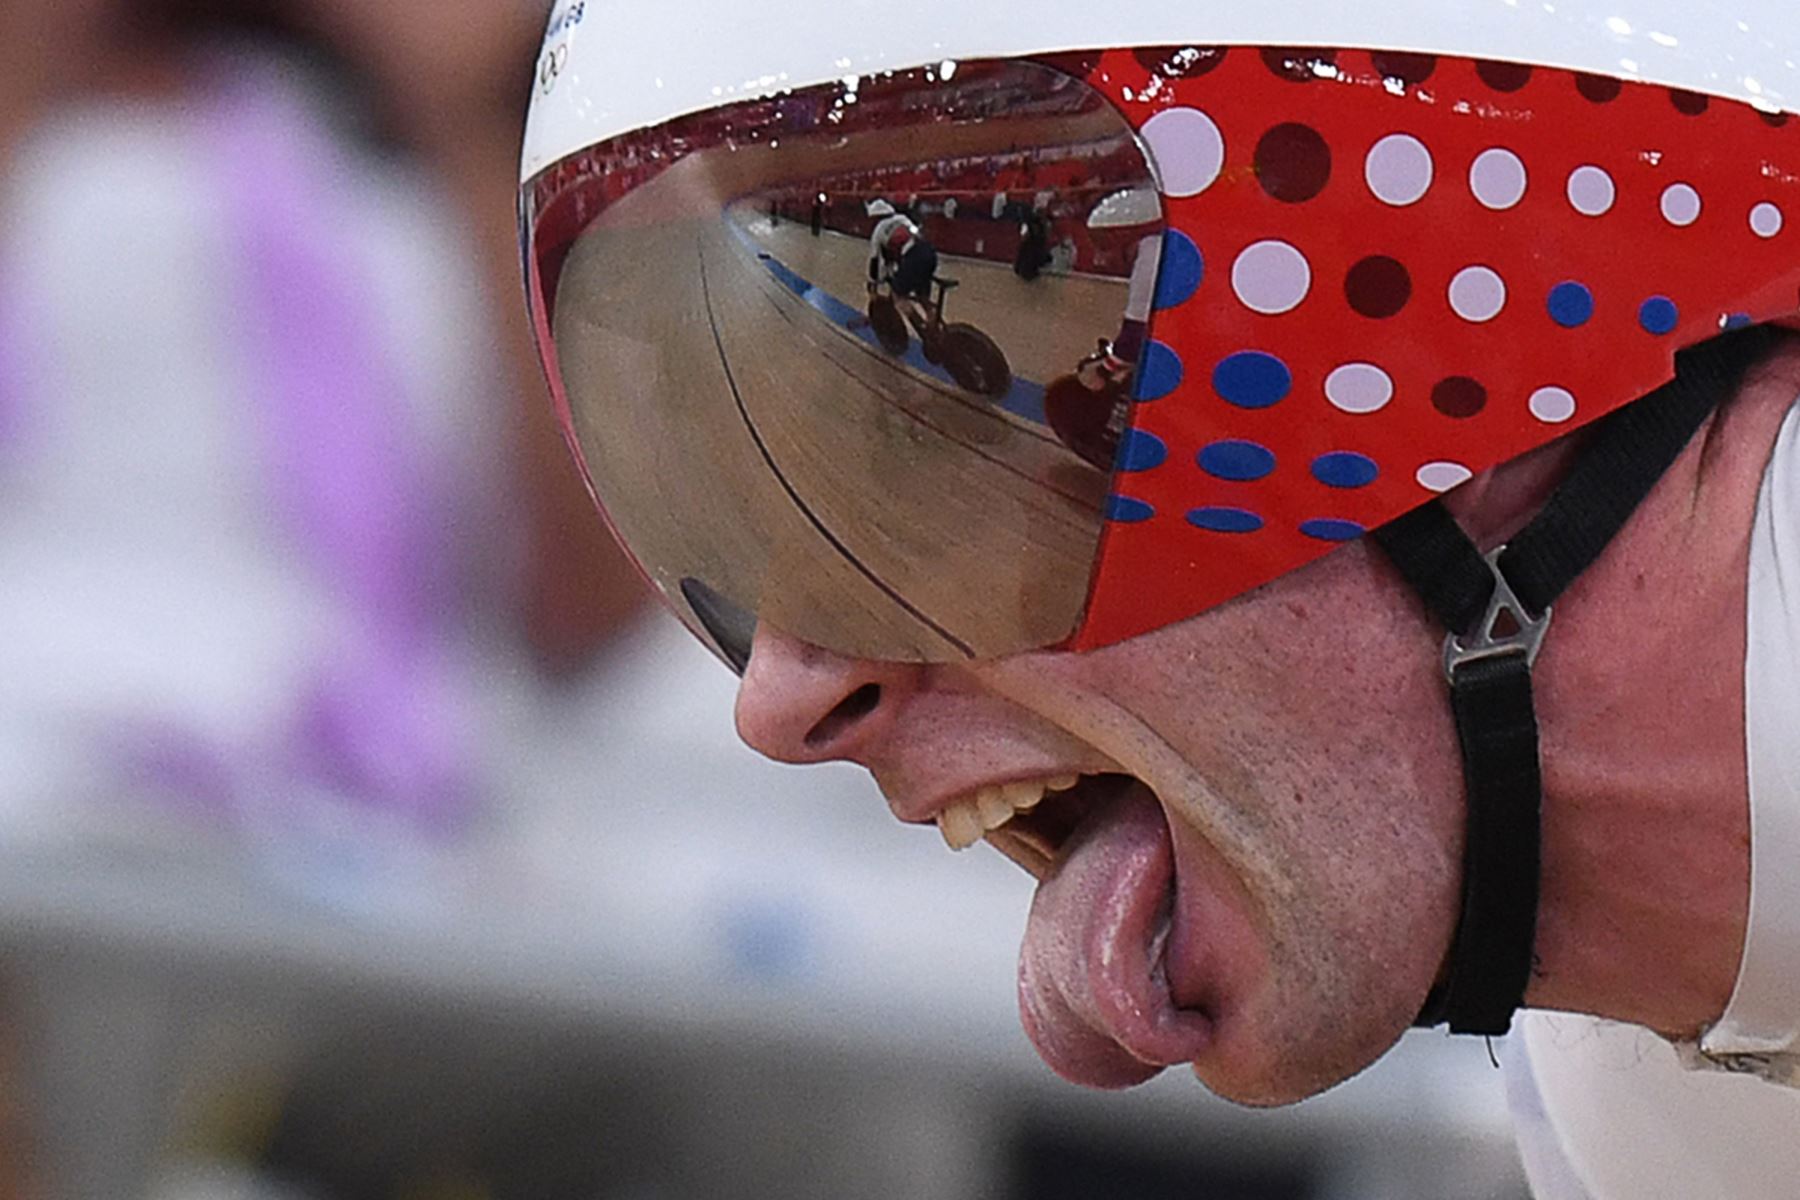 Jason Kelly de Gran Bretaña compite en la final de velocidad del equipo de ciclismo en pista masculino durante los Juegos Olímpicos de Tokio 2020.

Foto: AFP